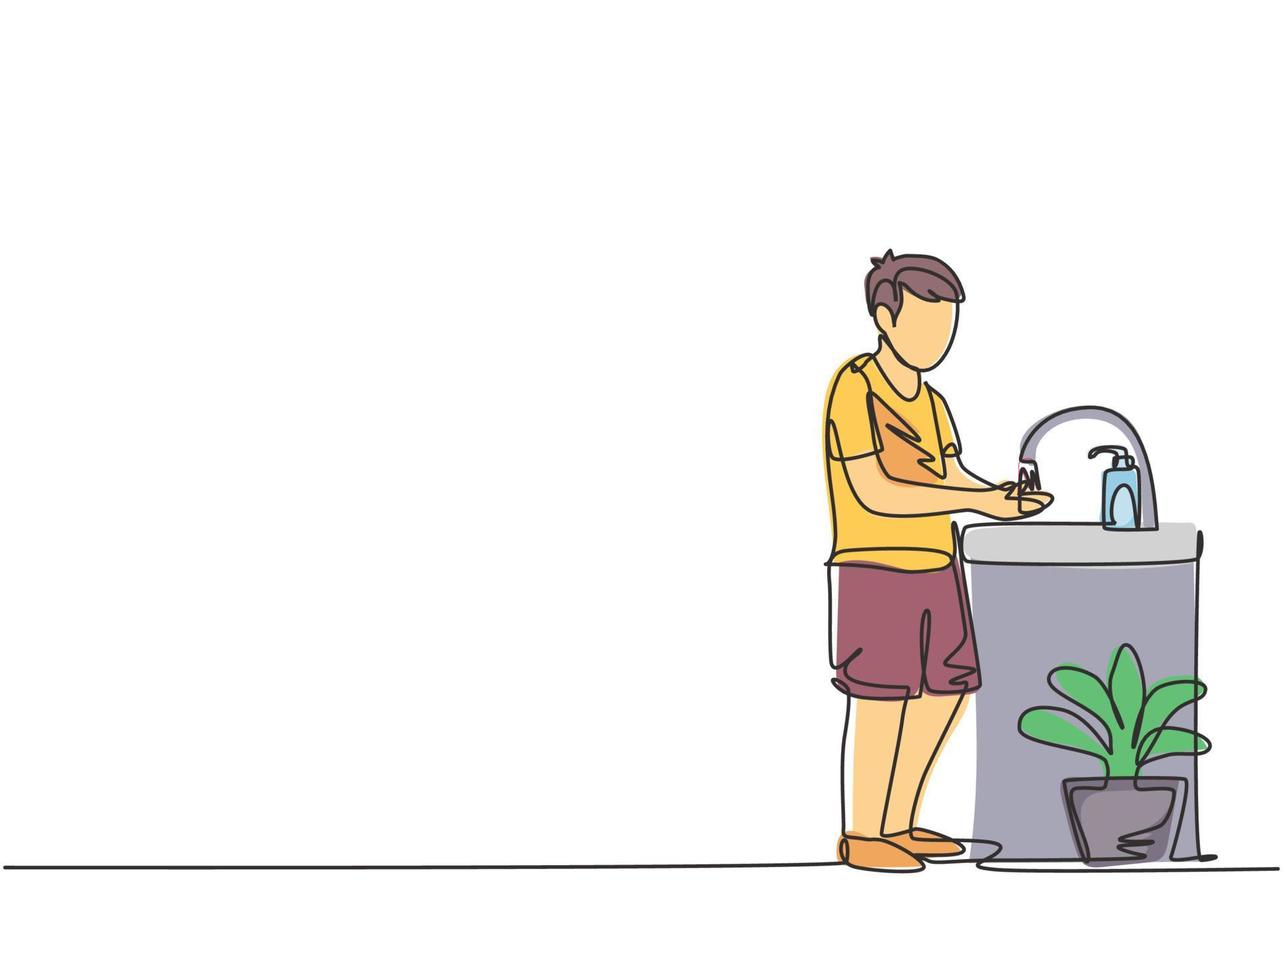 continuo un disegno al tratto un ragazzo si lava le mani nel lavandino, c'è un distributore di sapone vicino al rubinetto e c'è un vaso di piante sotto il lavandino. illustrazione grafica vettoriale di disegno di disegno a linea singola